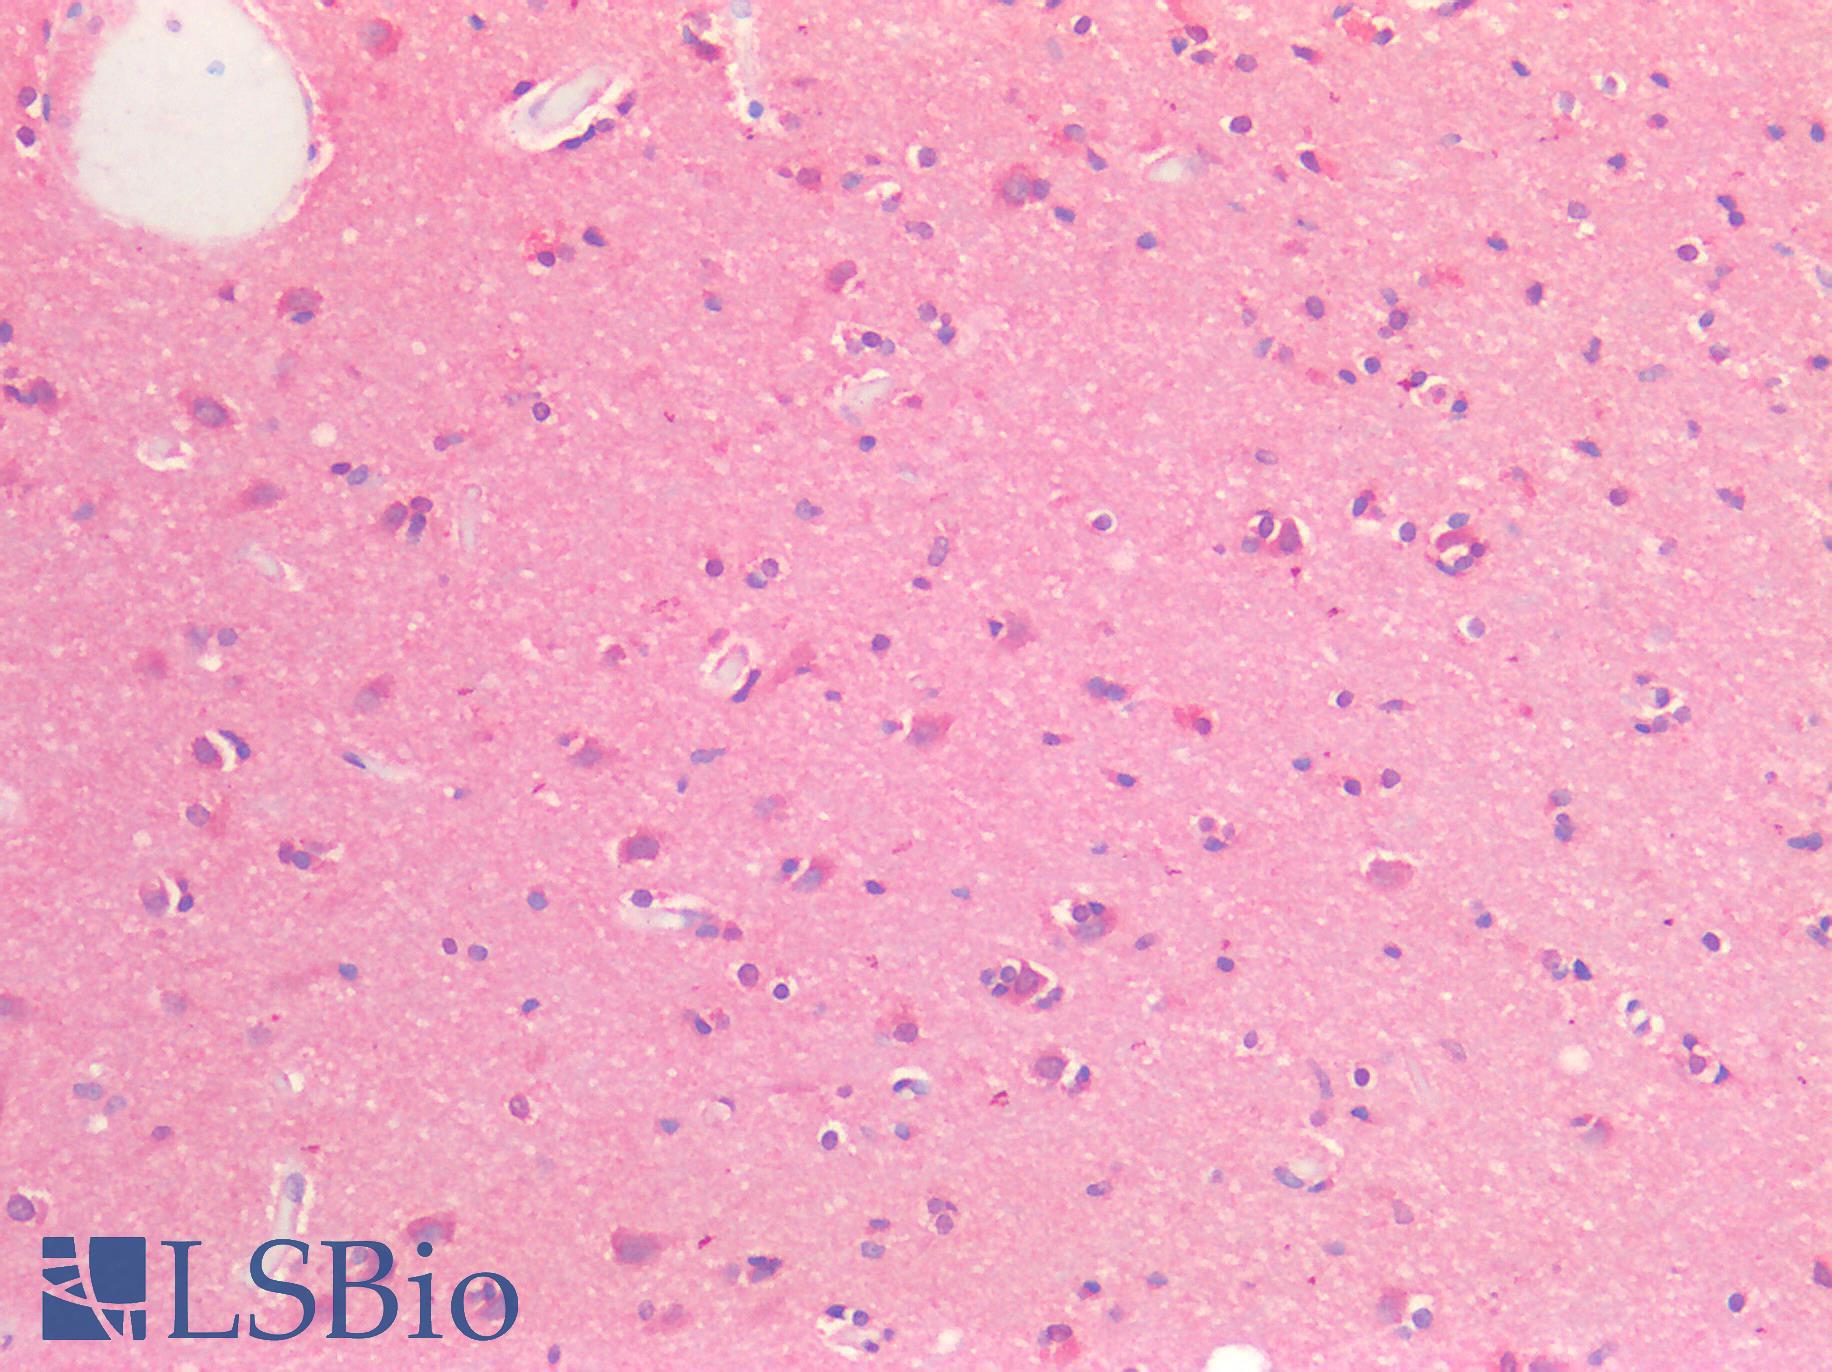 EPHB2 / EPH Receptor B2 Antibody - Human Brain, Cortex: Formalin-Fixed, Paraffin-Embedded (FFPE)